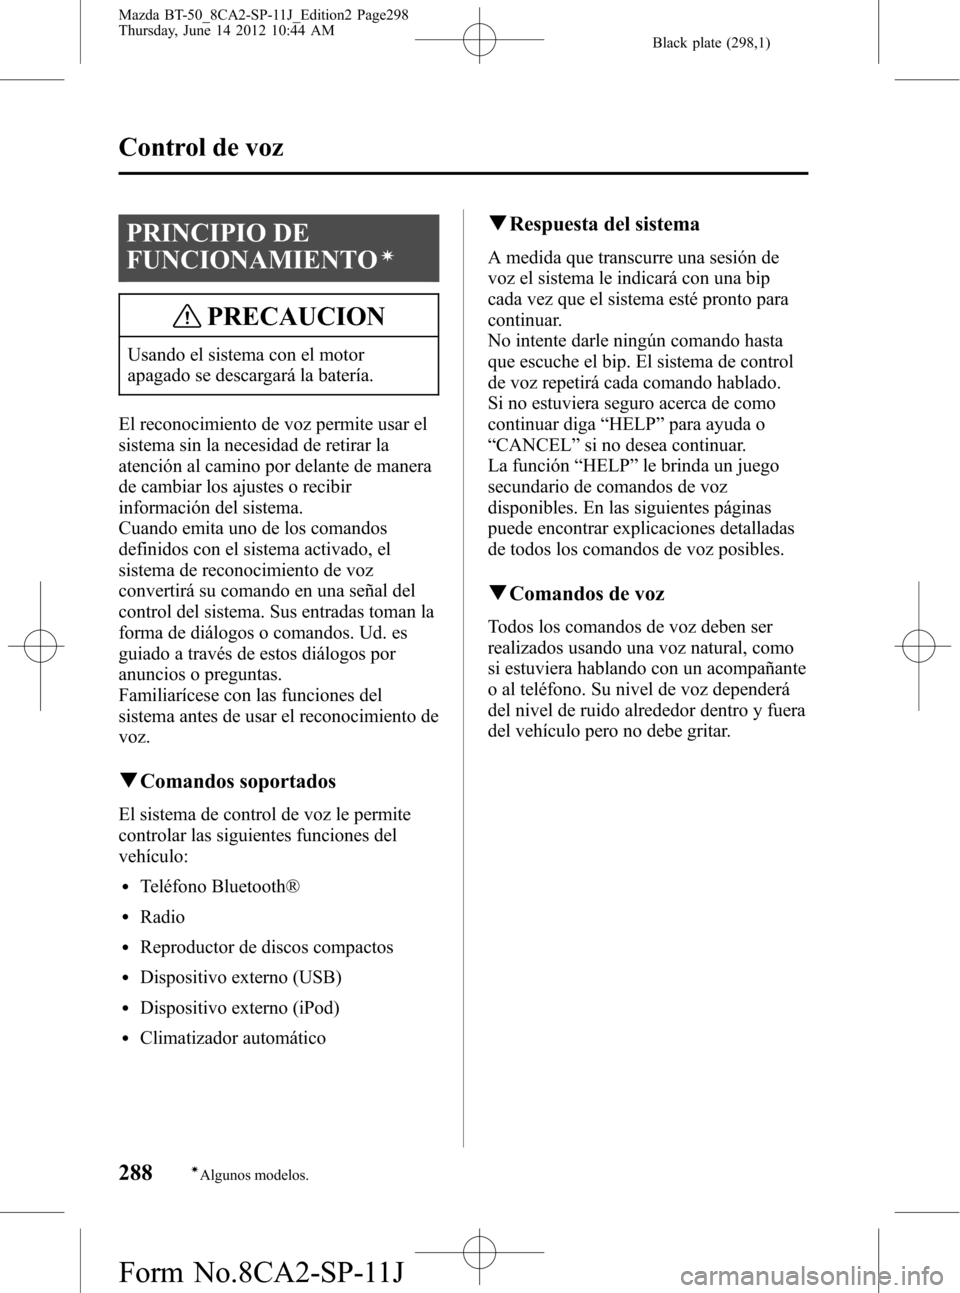 MAZDA MODEL BT-50 2015  Manual del propietario (in Spanish) Black plate (298,1)
PRINCIPIO DE
FUNCIONAMIENTO
í
PRECAUCION
Usando el sistema con el motor
apagado se descargará la batería.
El reconocimiento de voz permite usar el
sistema sin la necesidad de re